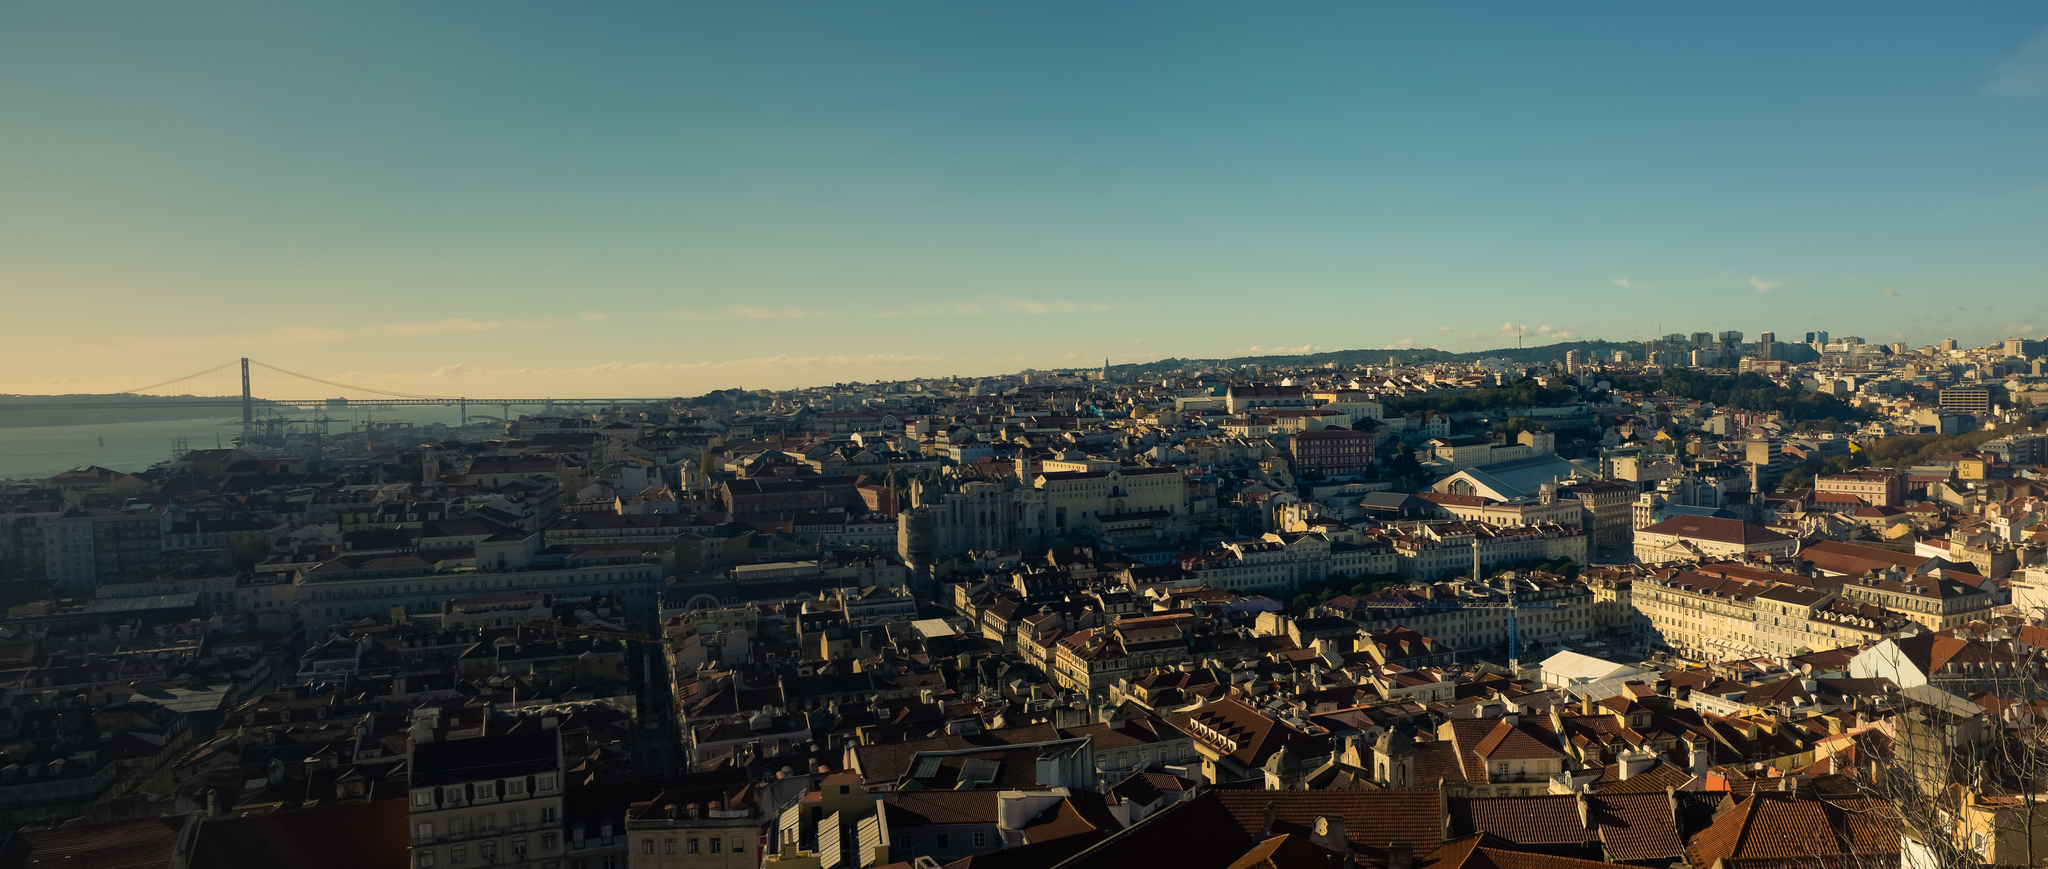 Vue d'ensemble sur Lisbonne. Crédit photo @Arden - Flickr